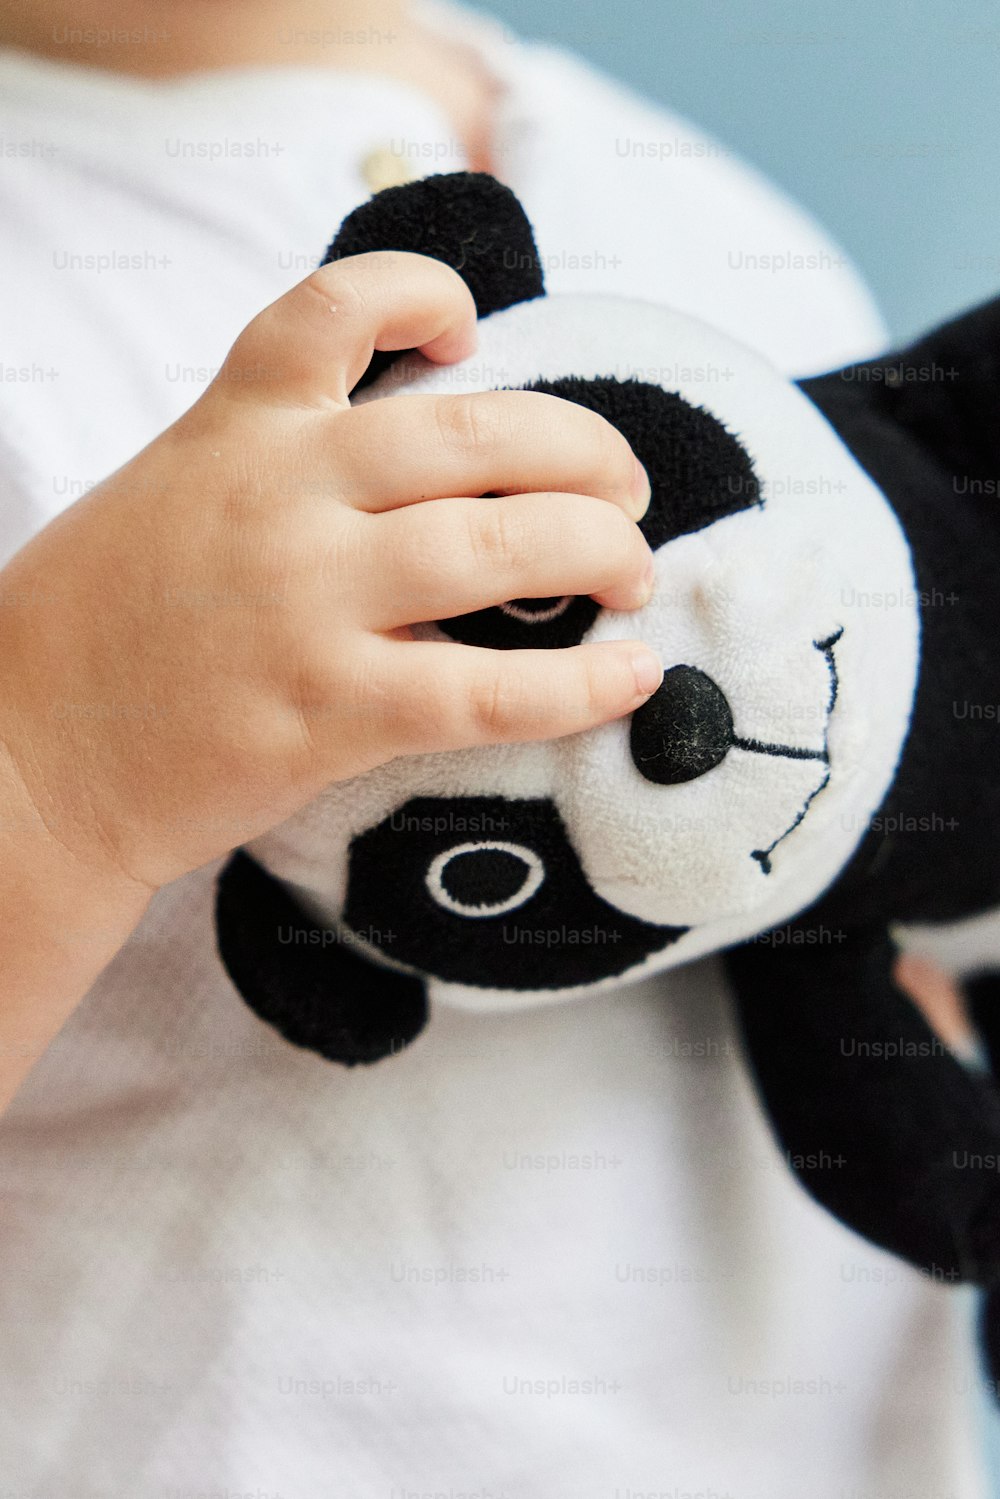 パンダのぬいぐるみを抱いた小さな子供